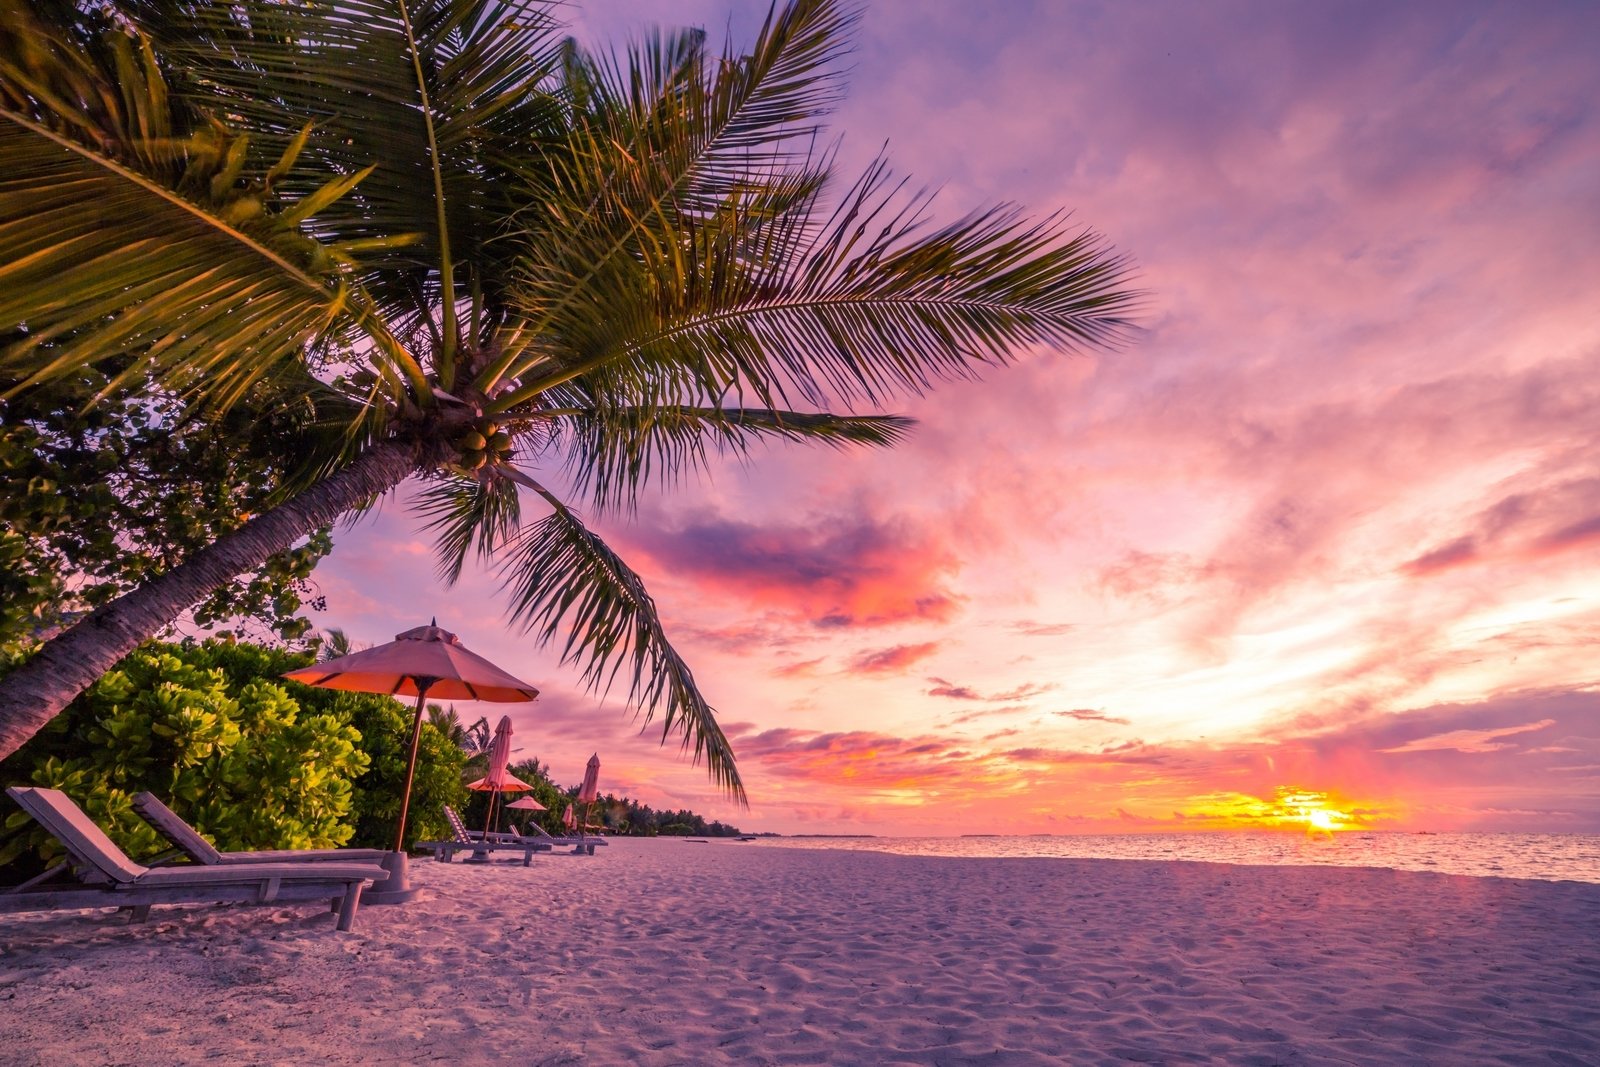 Sunset Background Wallpaper Beach / Tropical Beach Sunset Wallpapers Top Free Tropical Beach